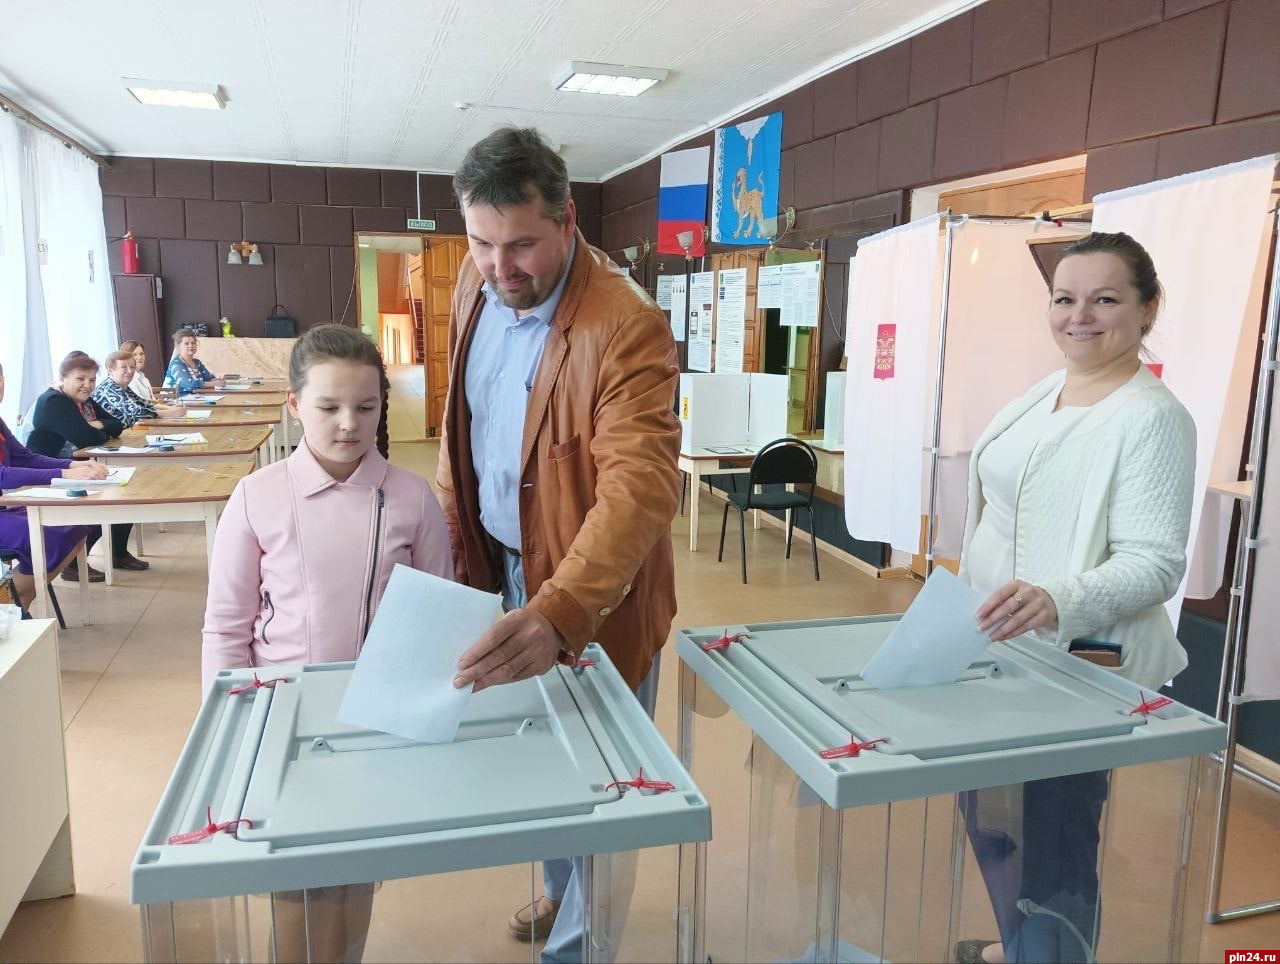 Явка на выборах главы Пустошкинского района по состоянию на 18:00 превысила 38%